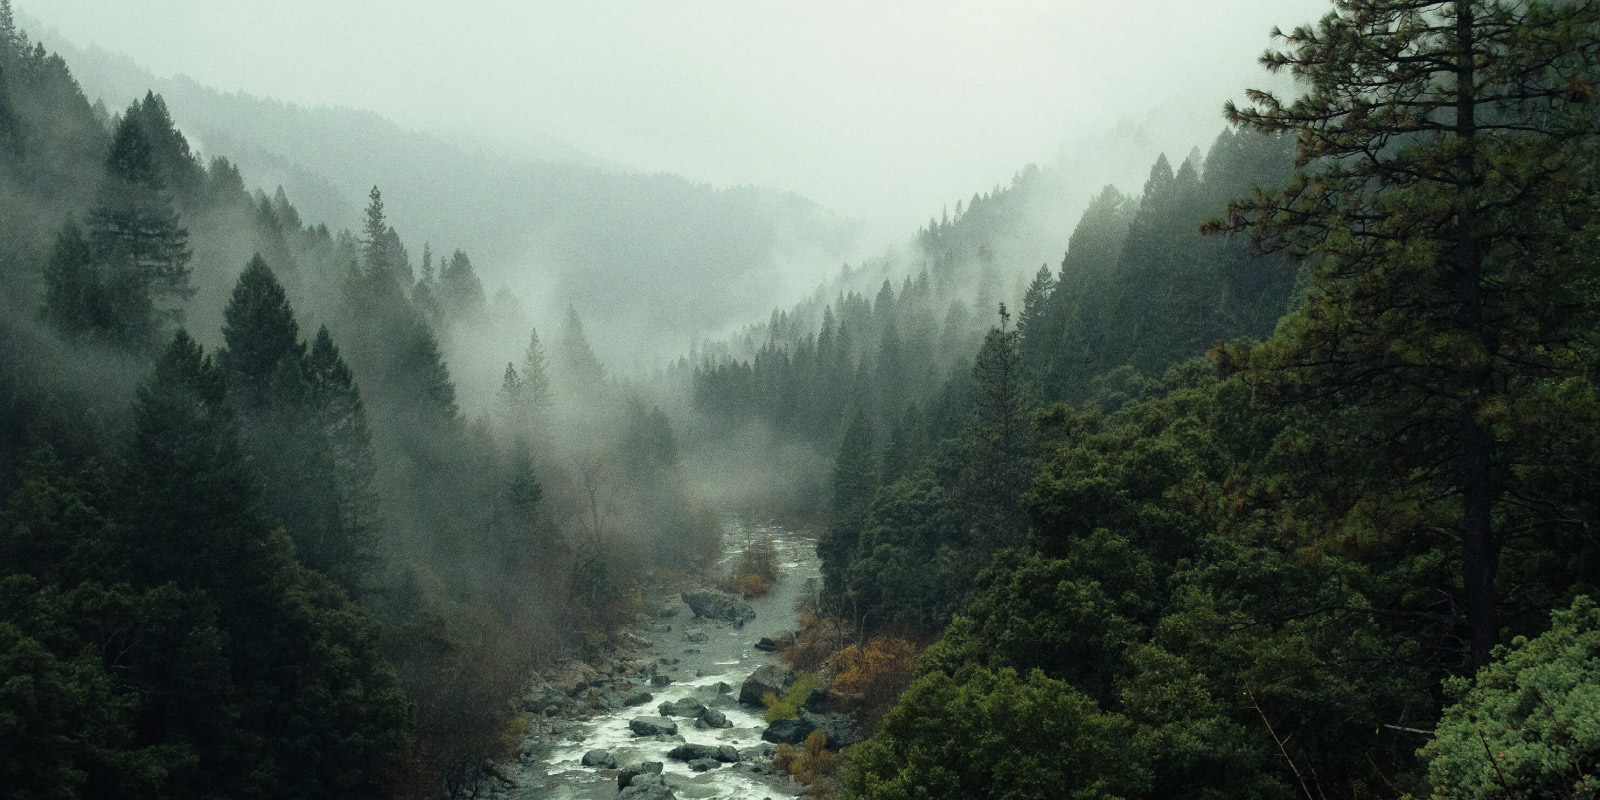 Río rodeado de árboles y niebla.